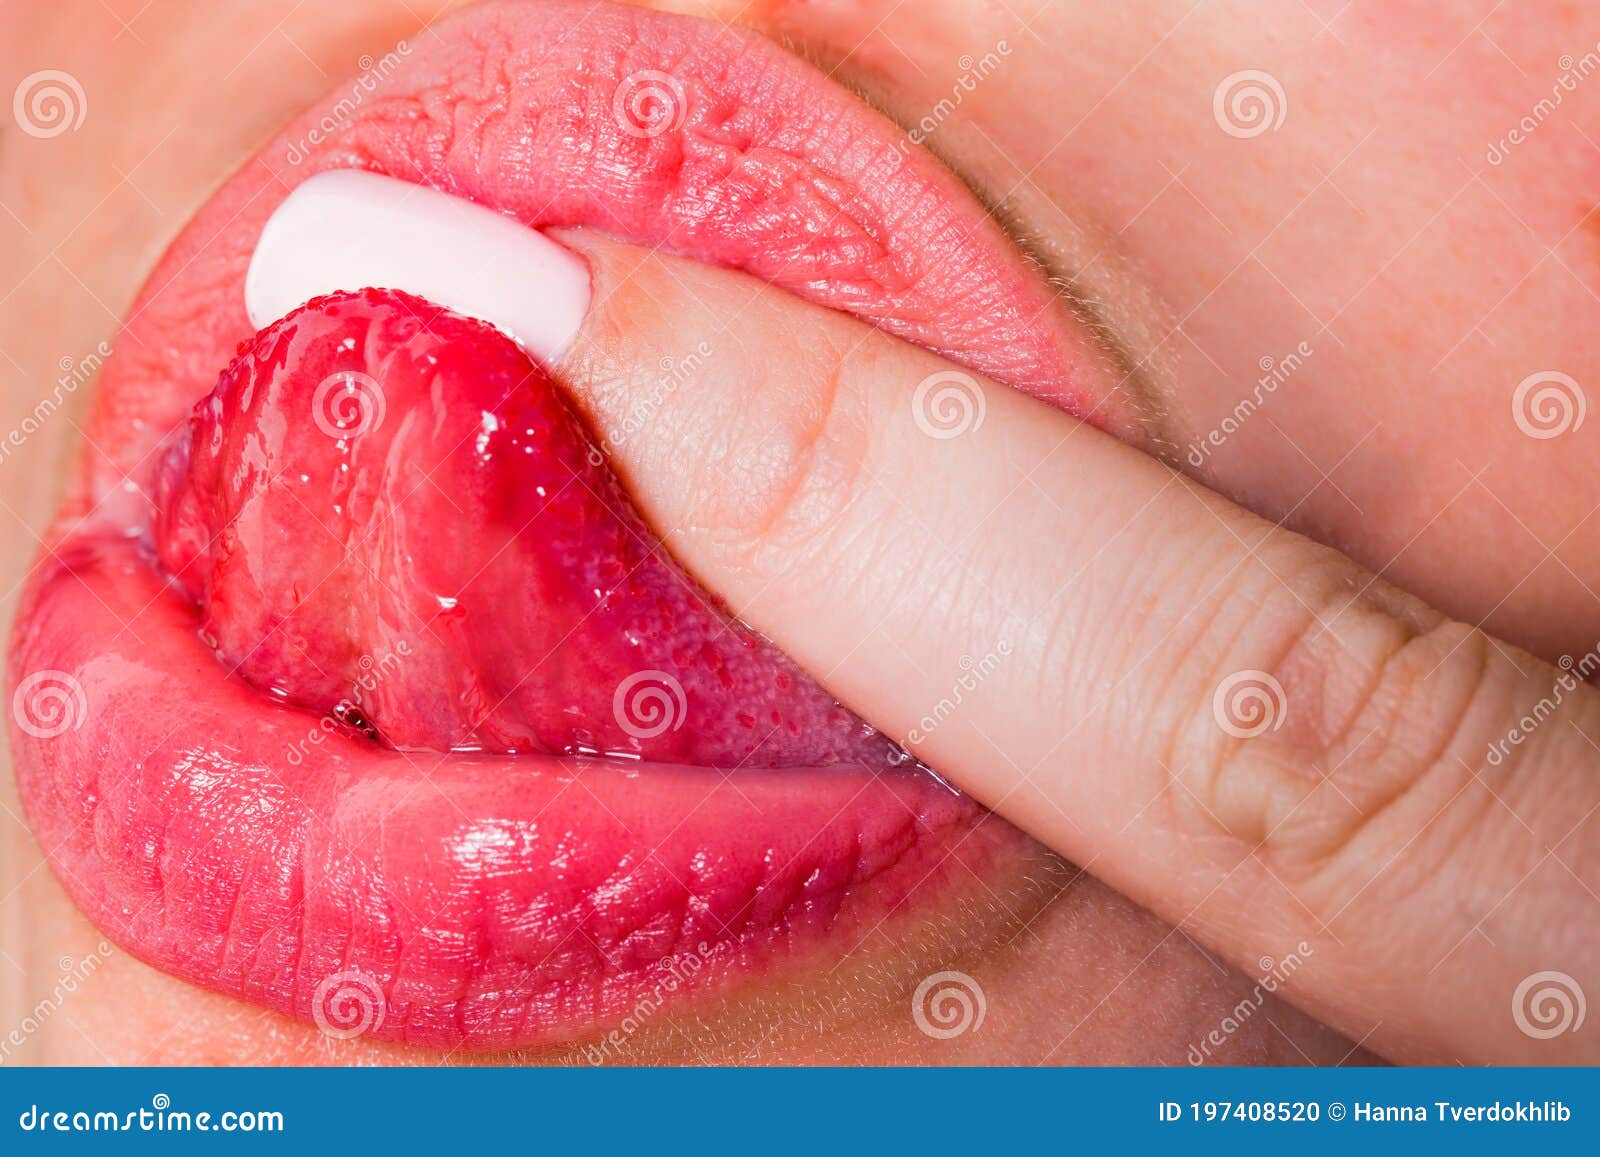 Oral Licking